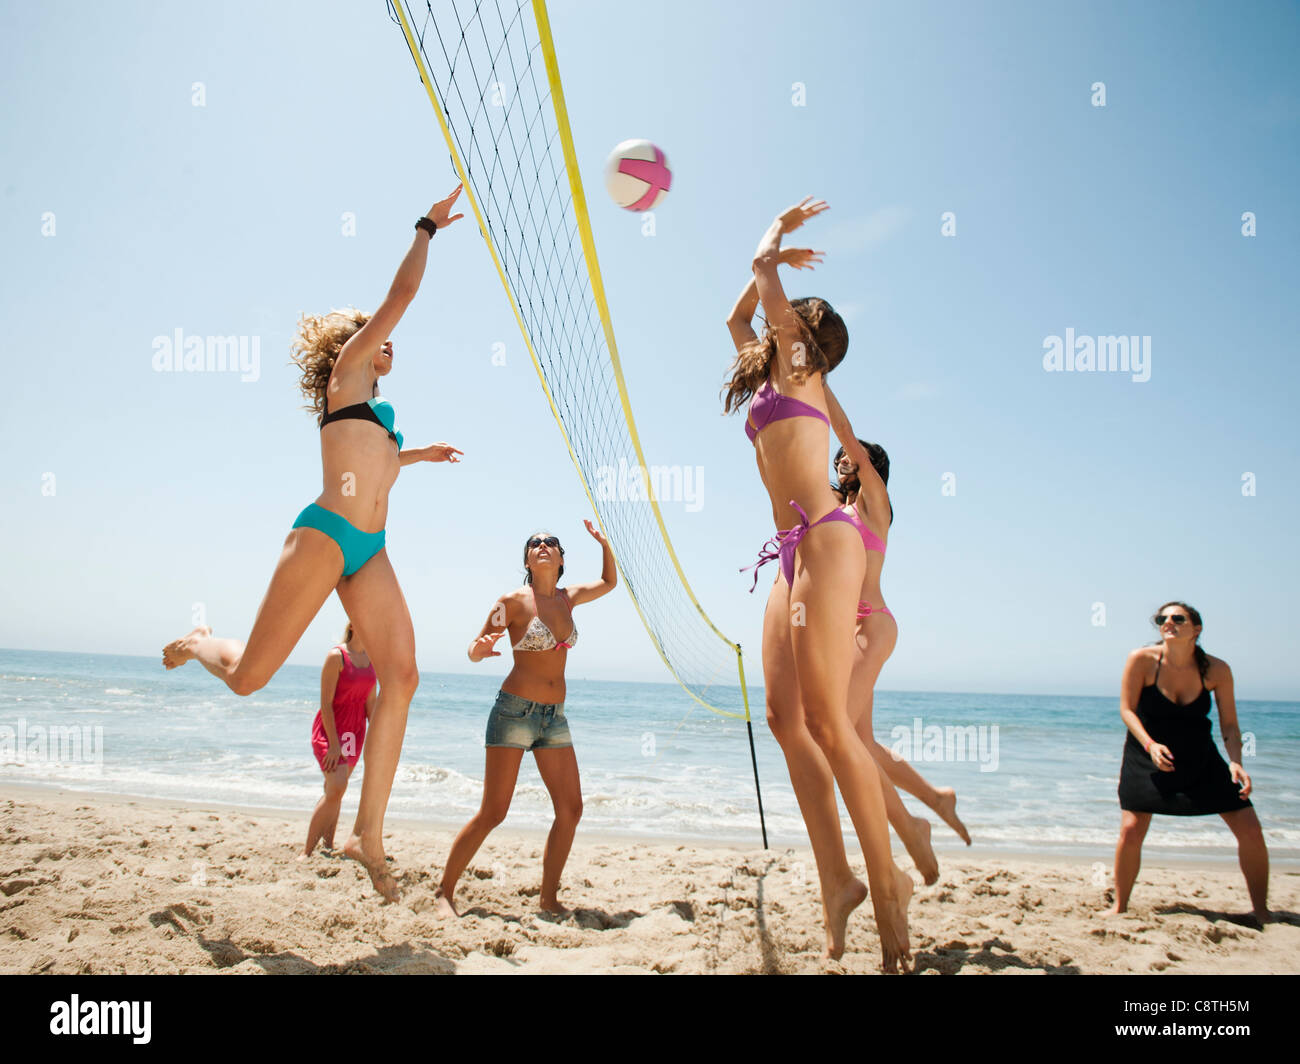 USA, California, Malibu, Group of young women playing beach volleyball Stock Photo